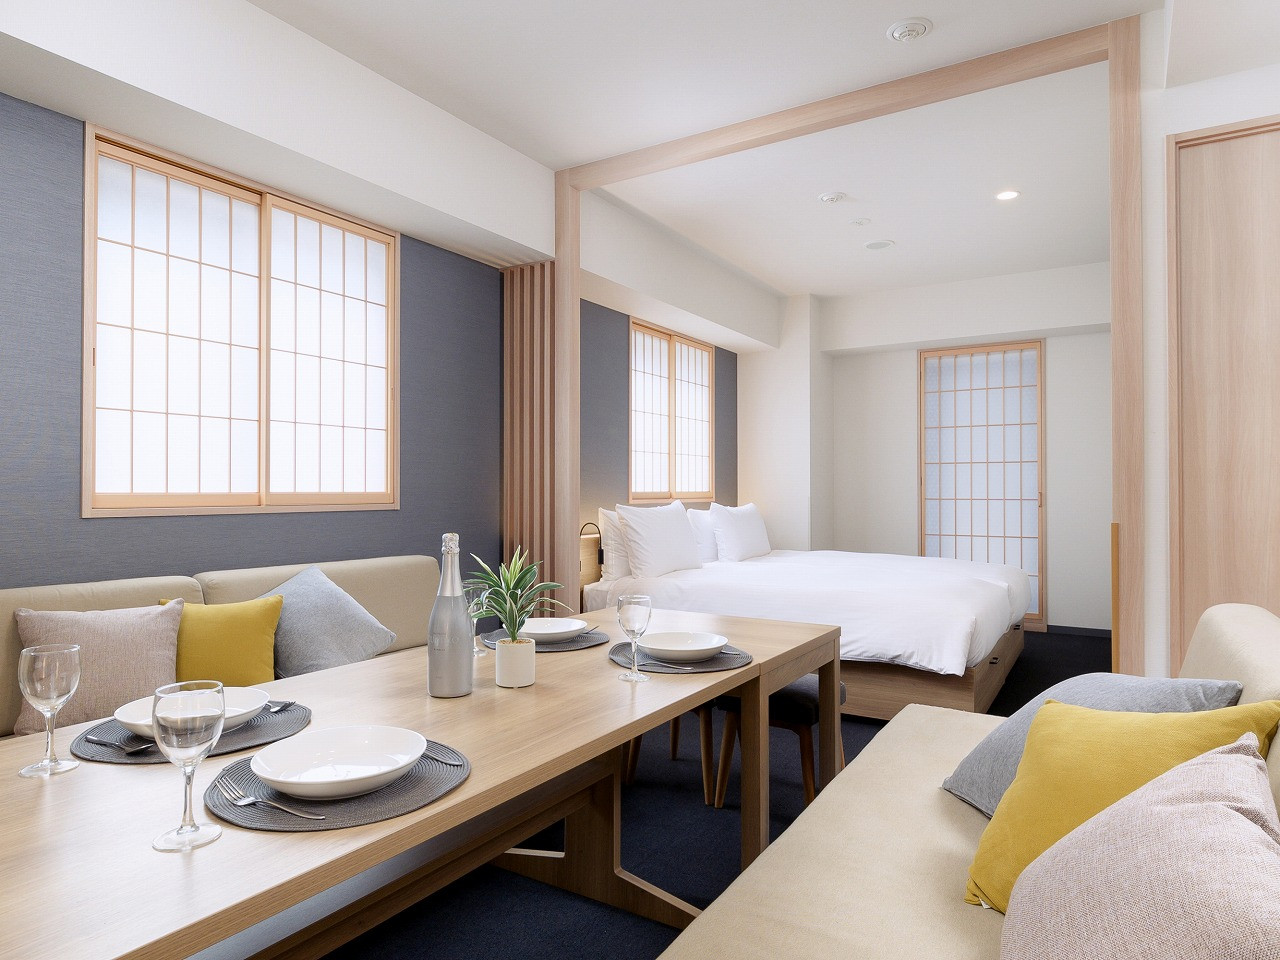 W M アパートメントホテル Mimaru東京 赤坂 マンスリー利用に最適な約40 の広いお部屋 最大4名様までご入居可能です 東京都港区のウィークリーマンション マンスリーマンション情報 ウィークリー マンスリー